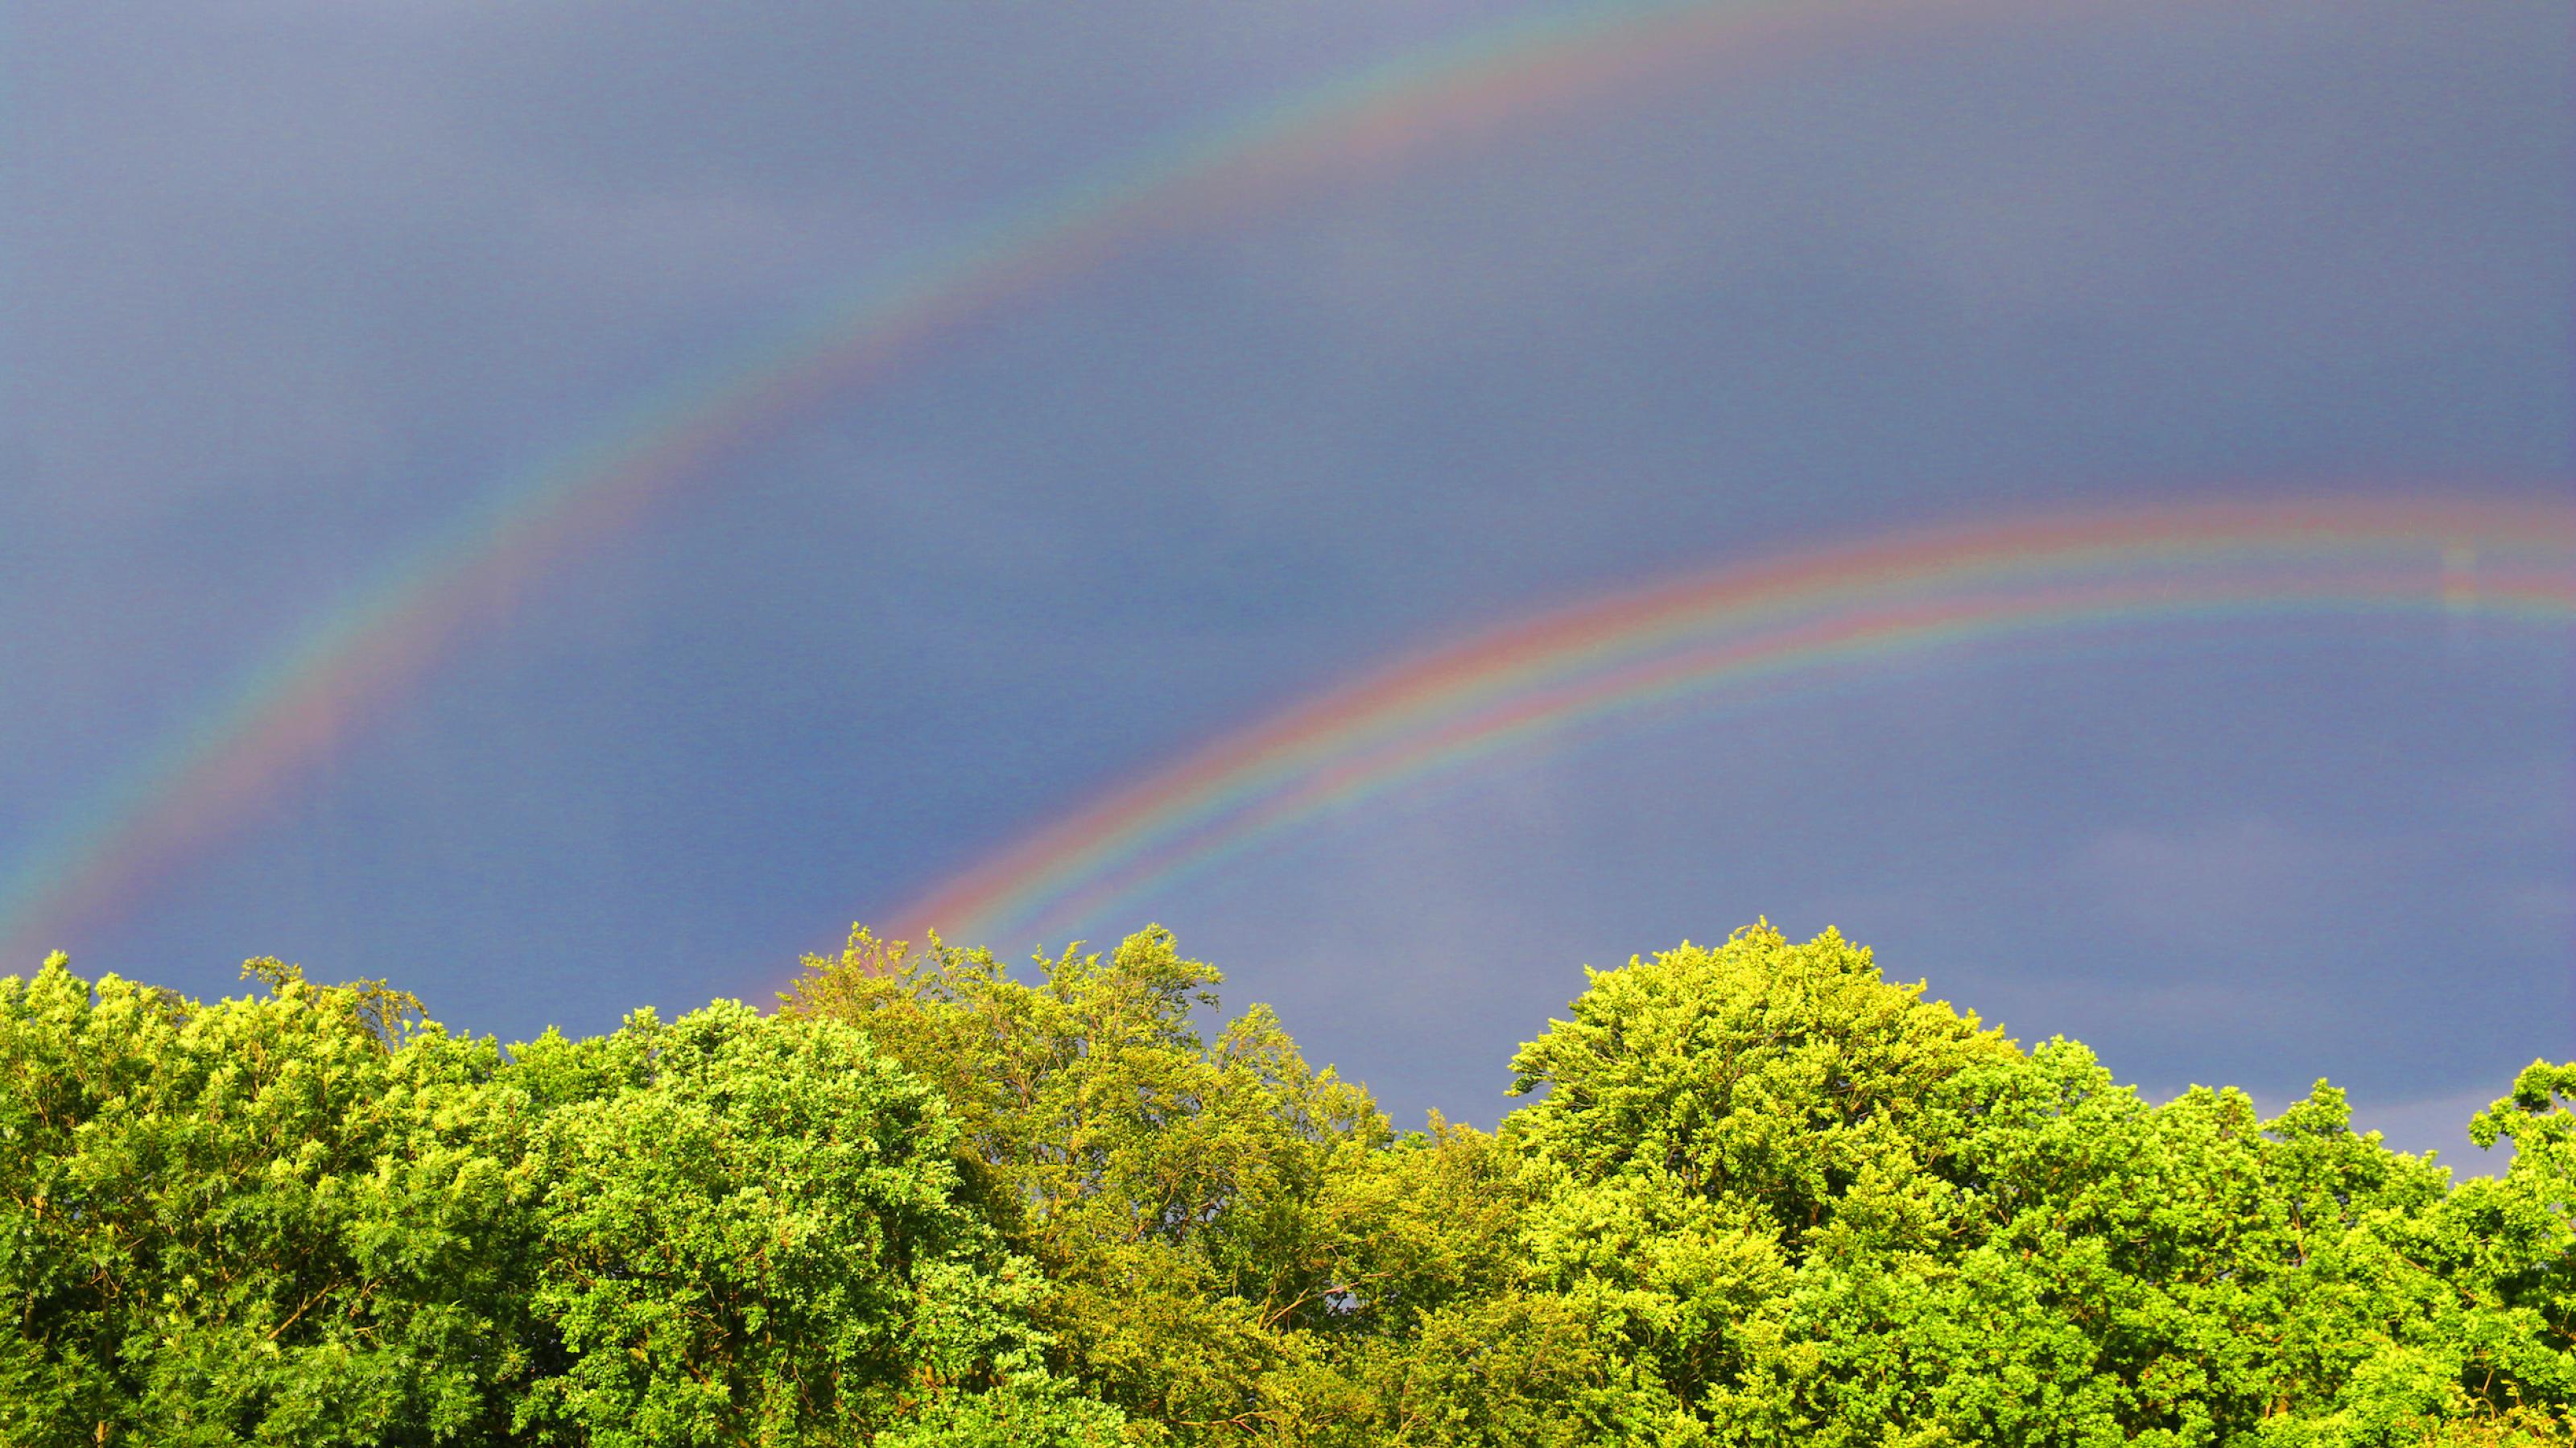 Ein doppelter Regenbogen wölbt sich an einem grauen Himmel über Bäumen, die von der tierstehenden Abendsonne angestrahlt werden. Ein Symbol der Hoffnung, oder nicht?